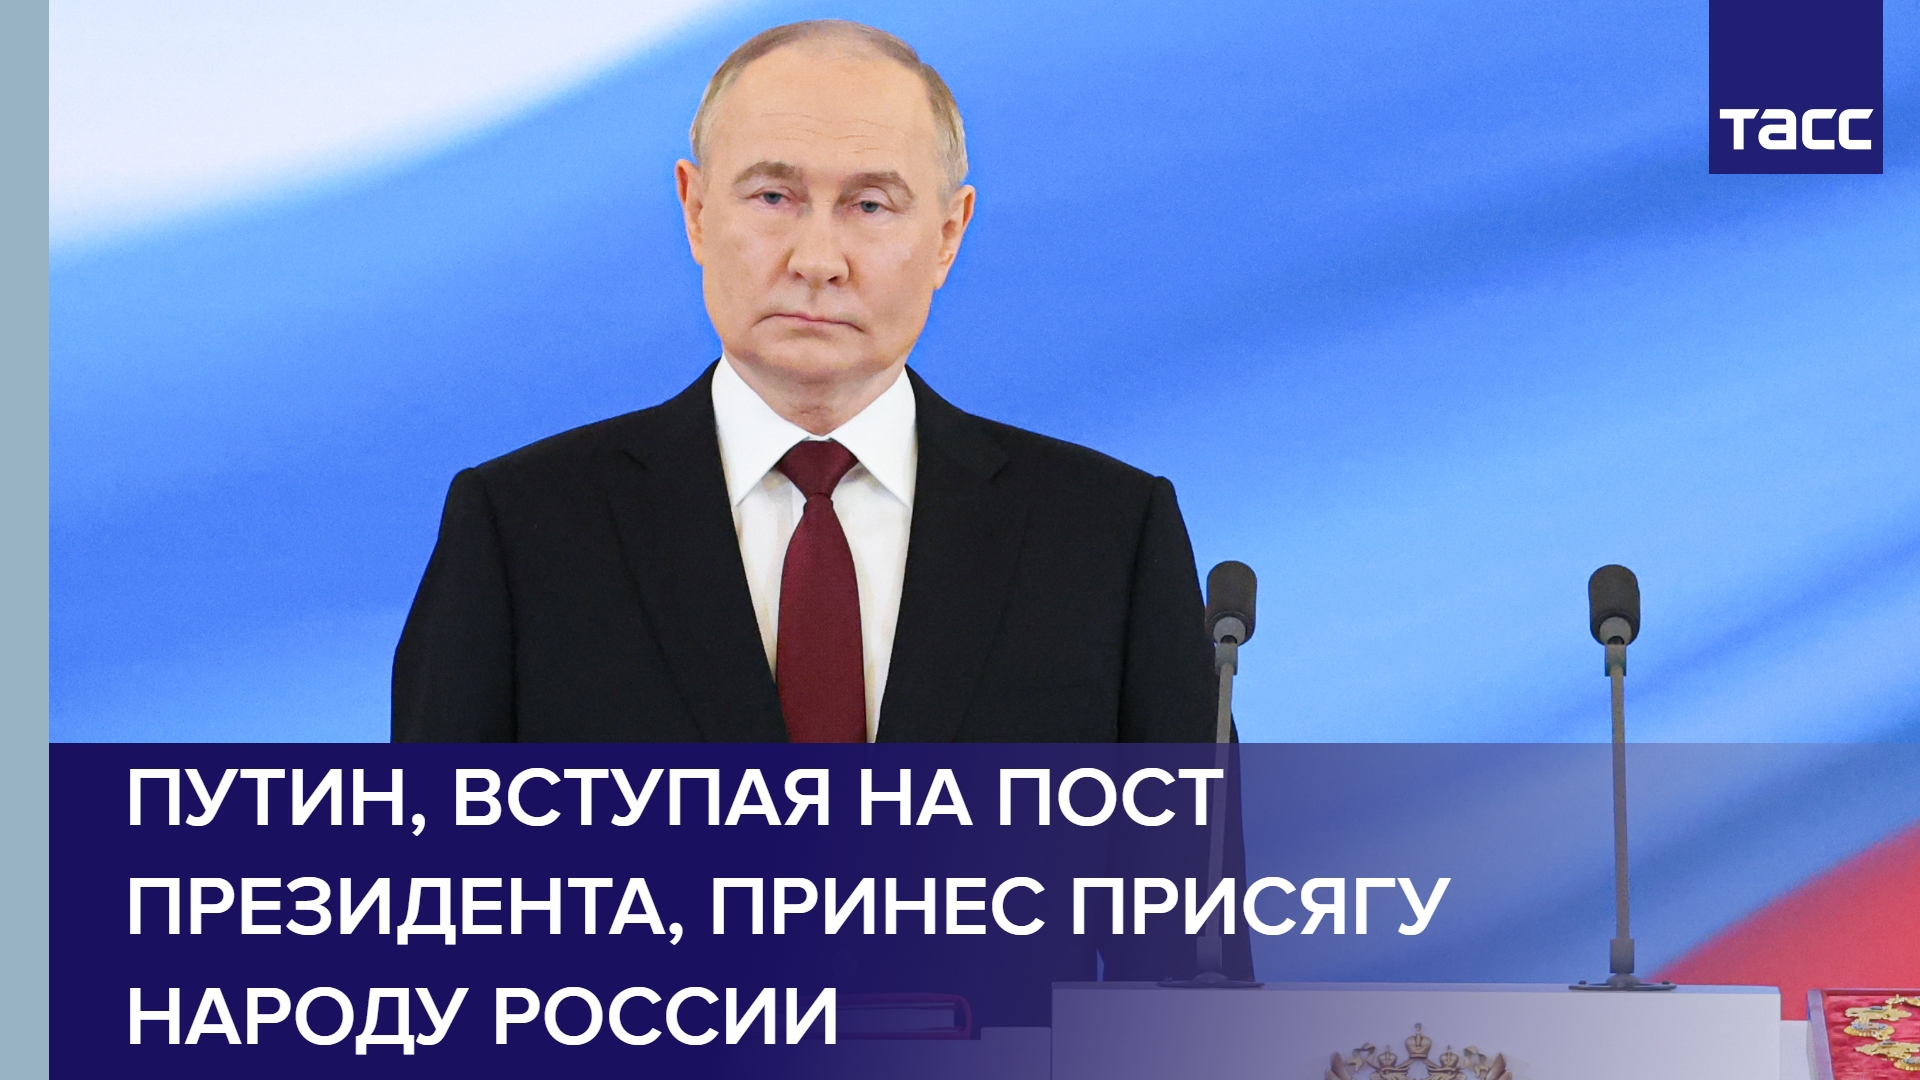 Путин, вступая на пост президента, принес присягу народу России